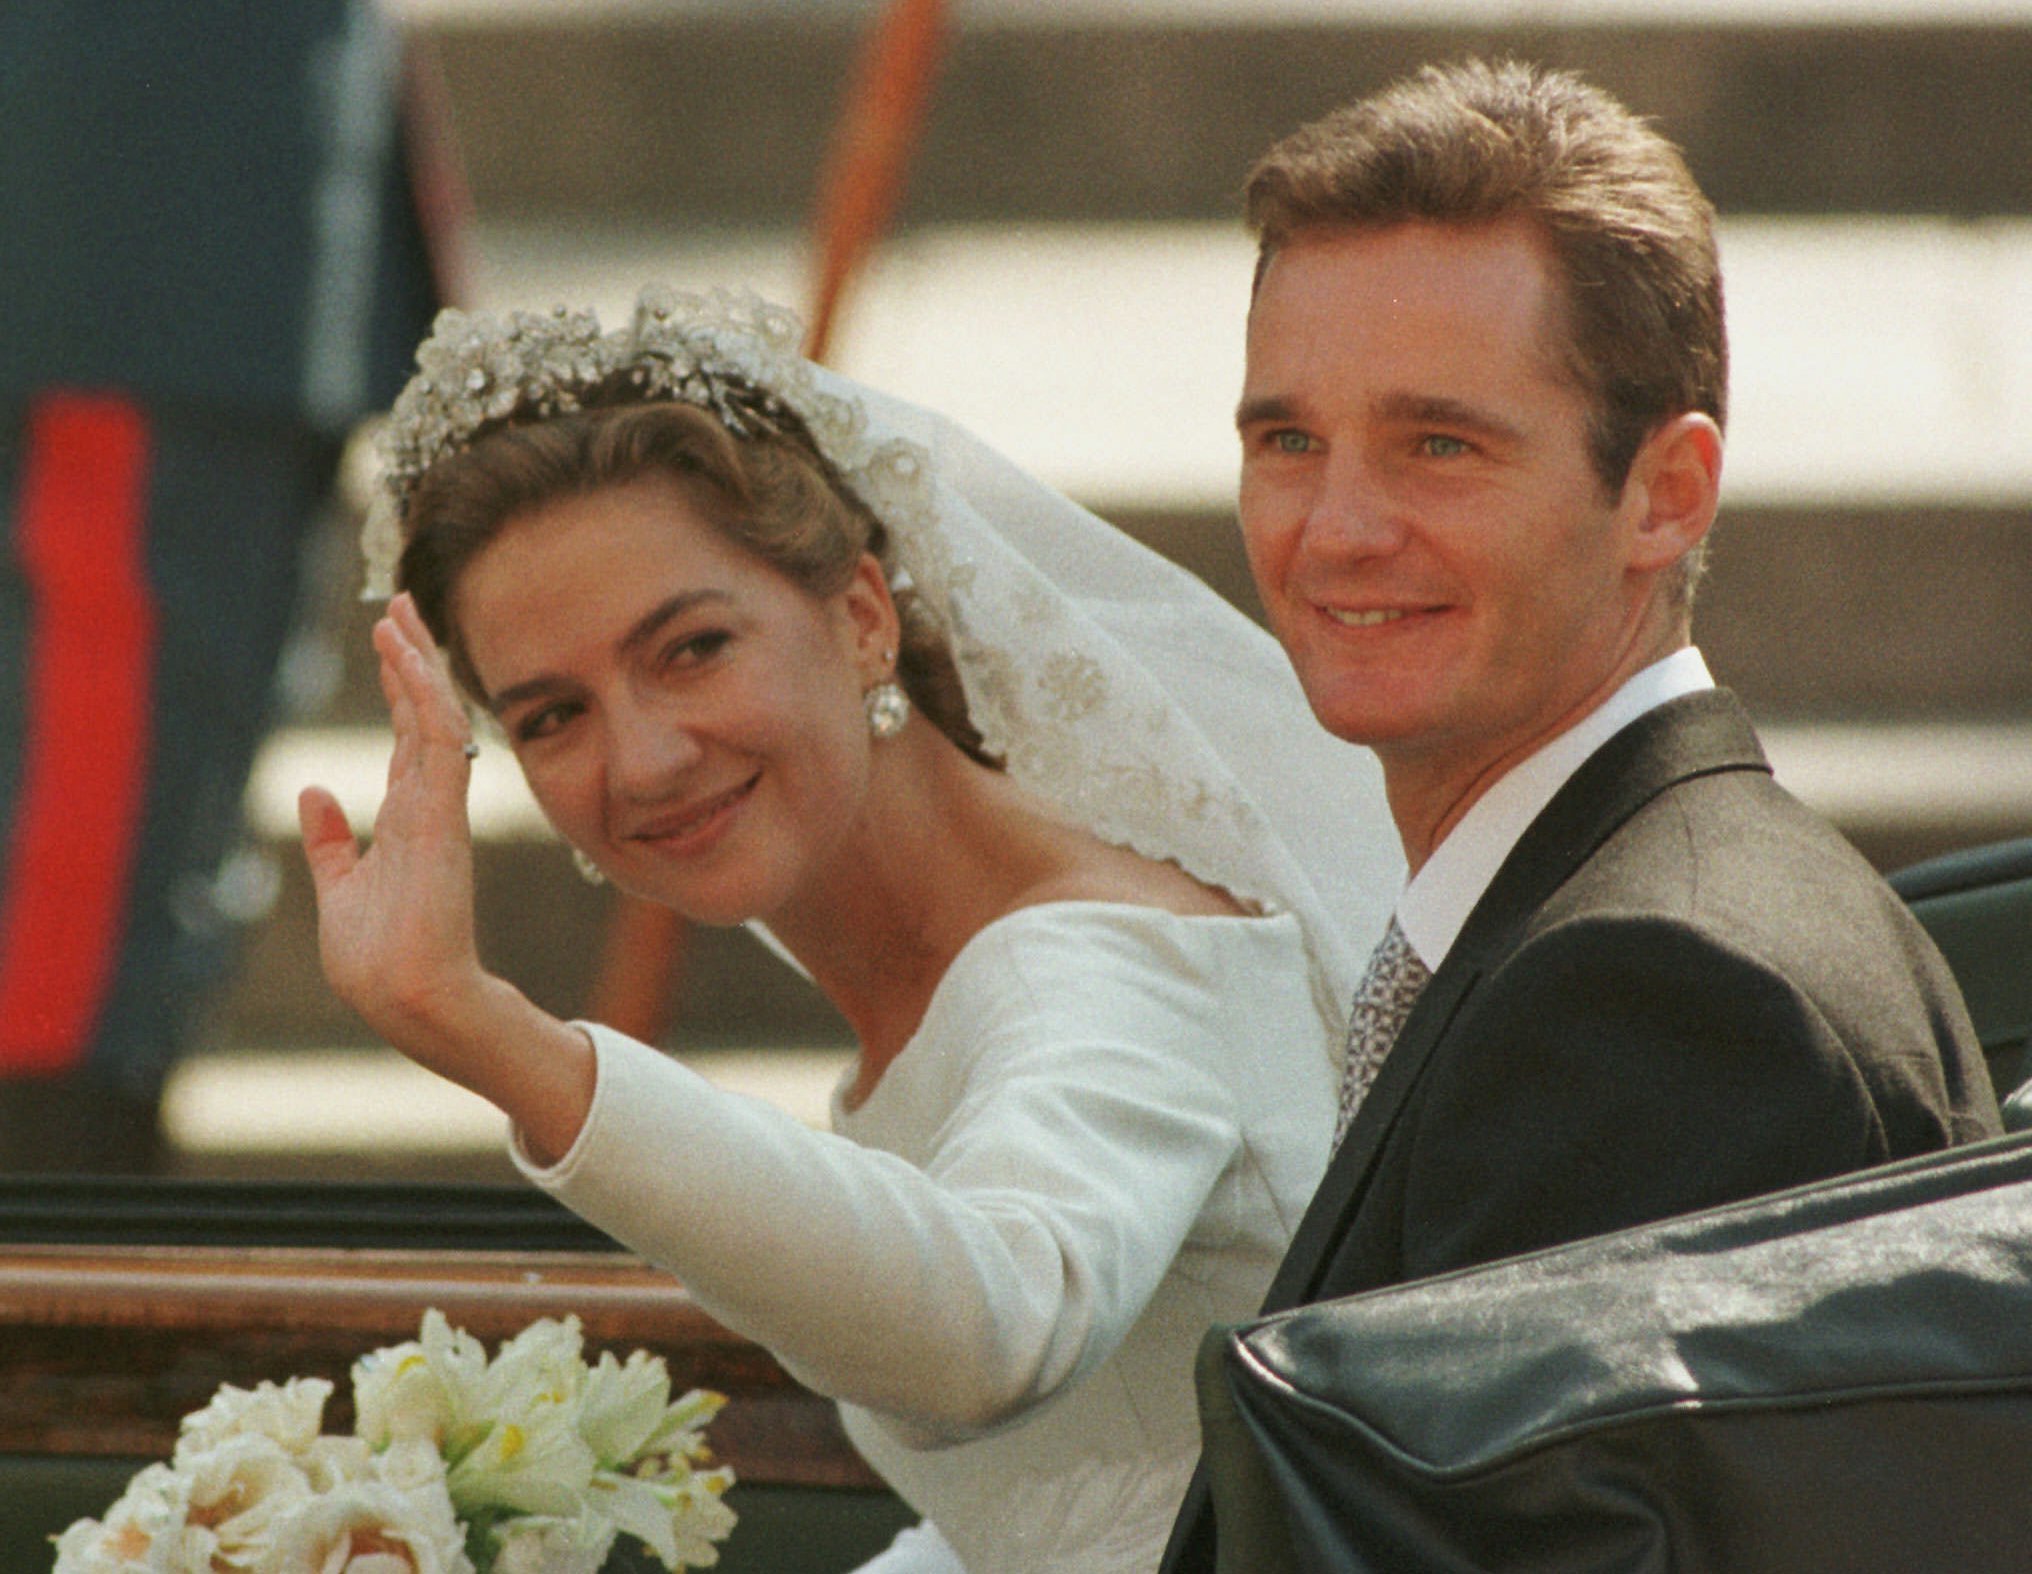 La Infanta Cristina e Iñaki Urdangarin el día de su boda, el 4 de octubre de 1997.